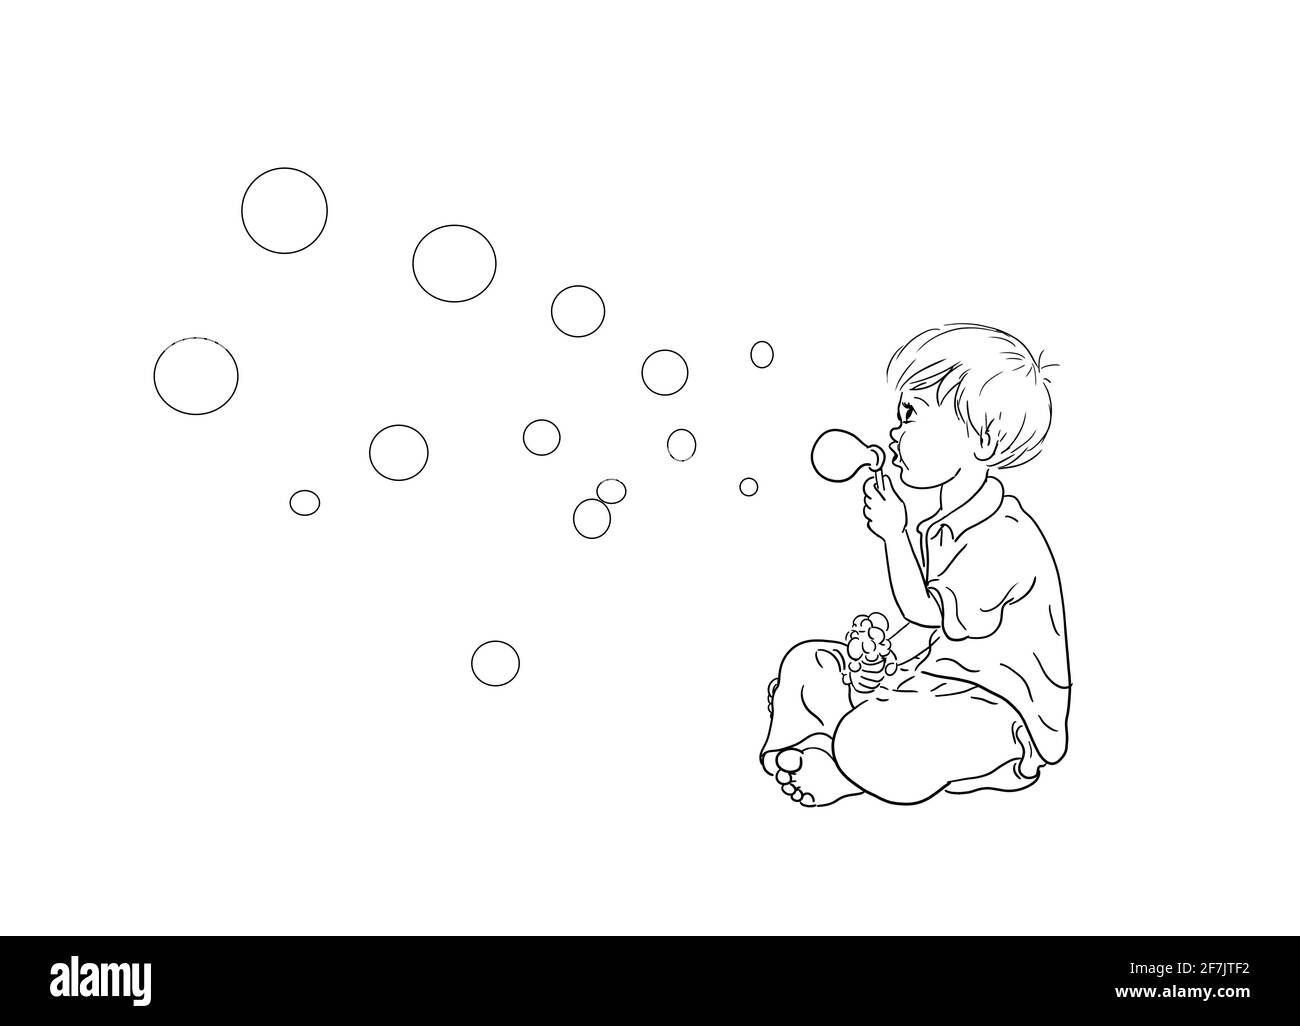 Ich liebe Seifenblasen Hintergrund weiß Junge sitzen gekreuzt barfuß  Schläge Blasen Blasen Blasen Blasen fliegen durch die Luft Flip-Flops  liegen Vor Stockfotografie - Alamy